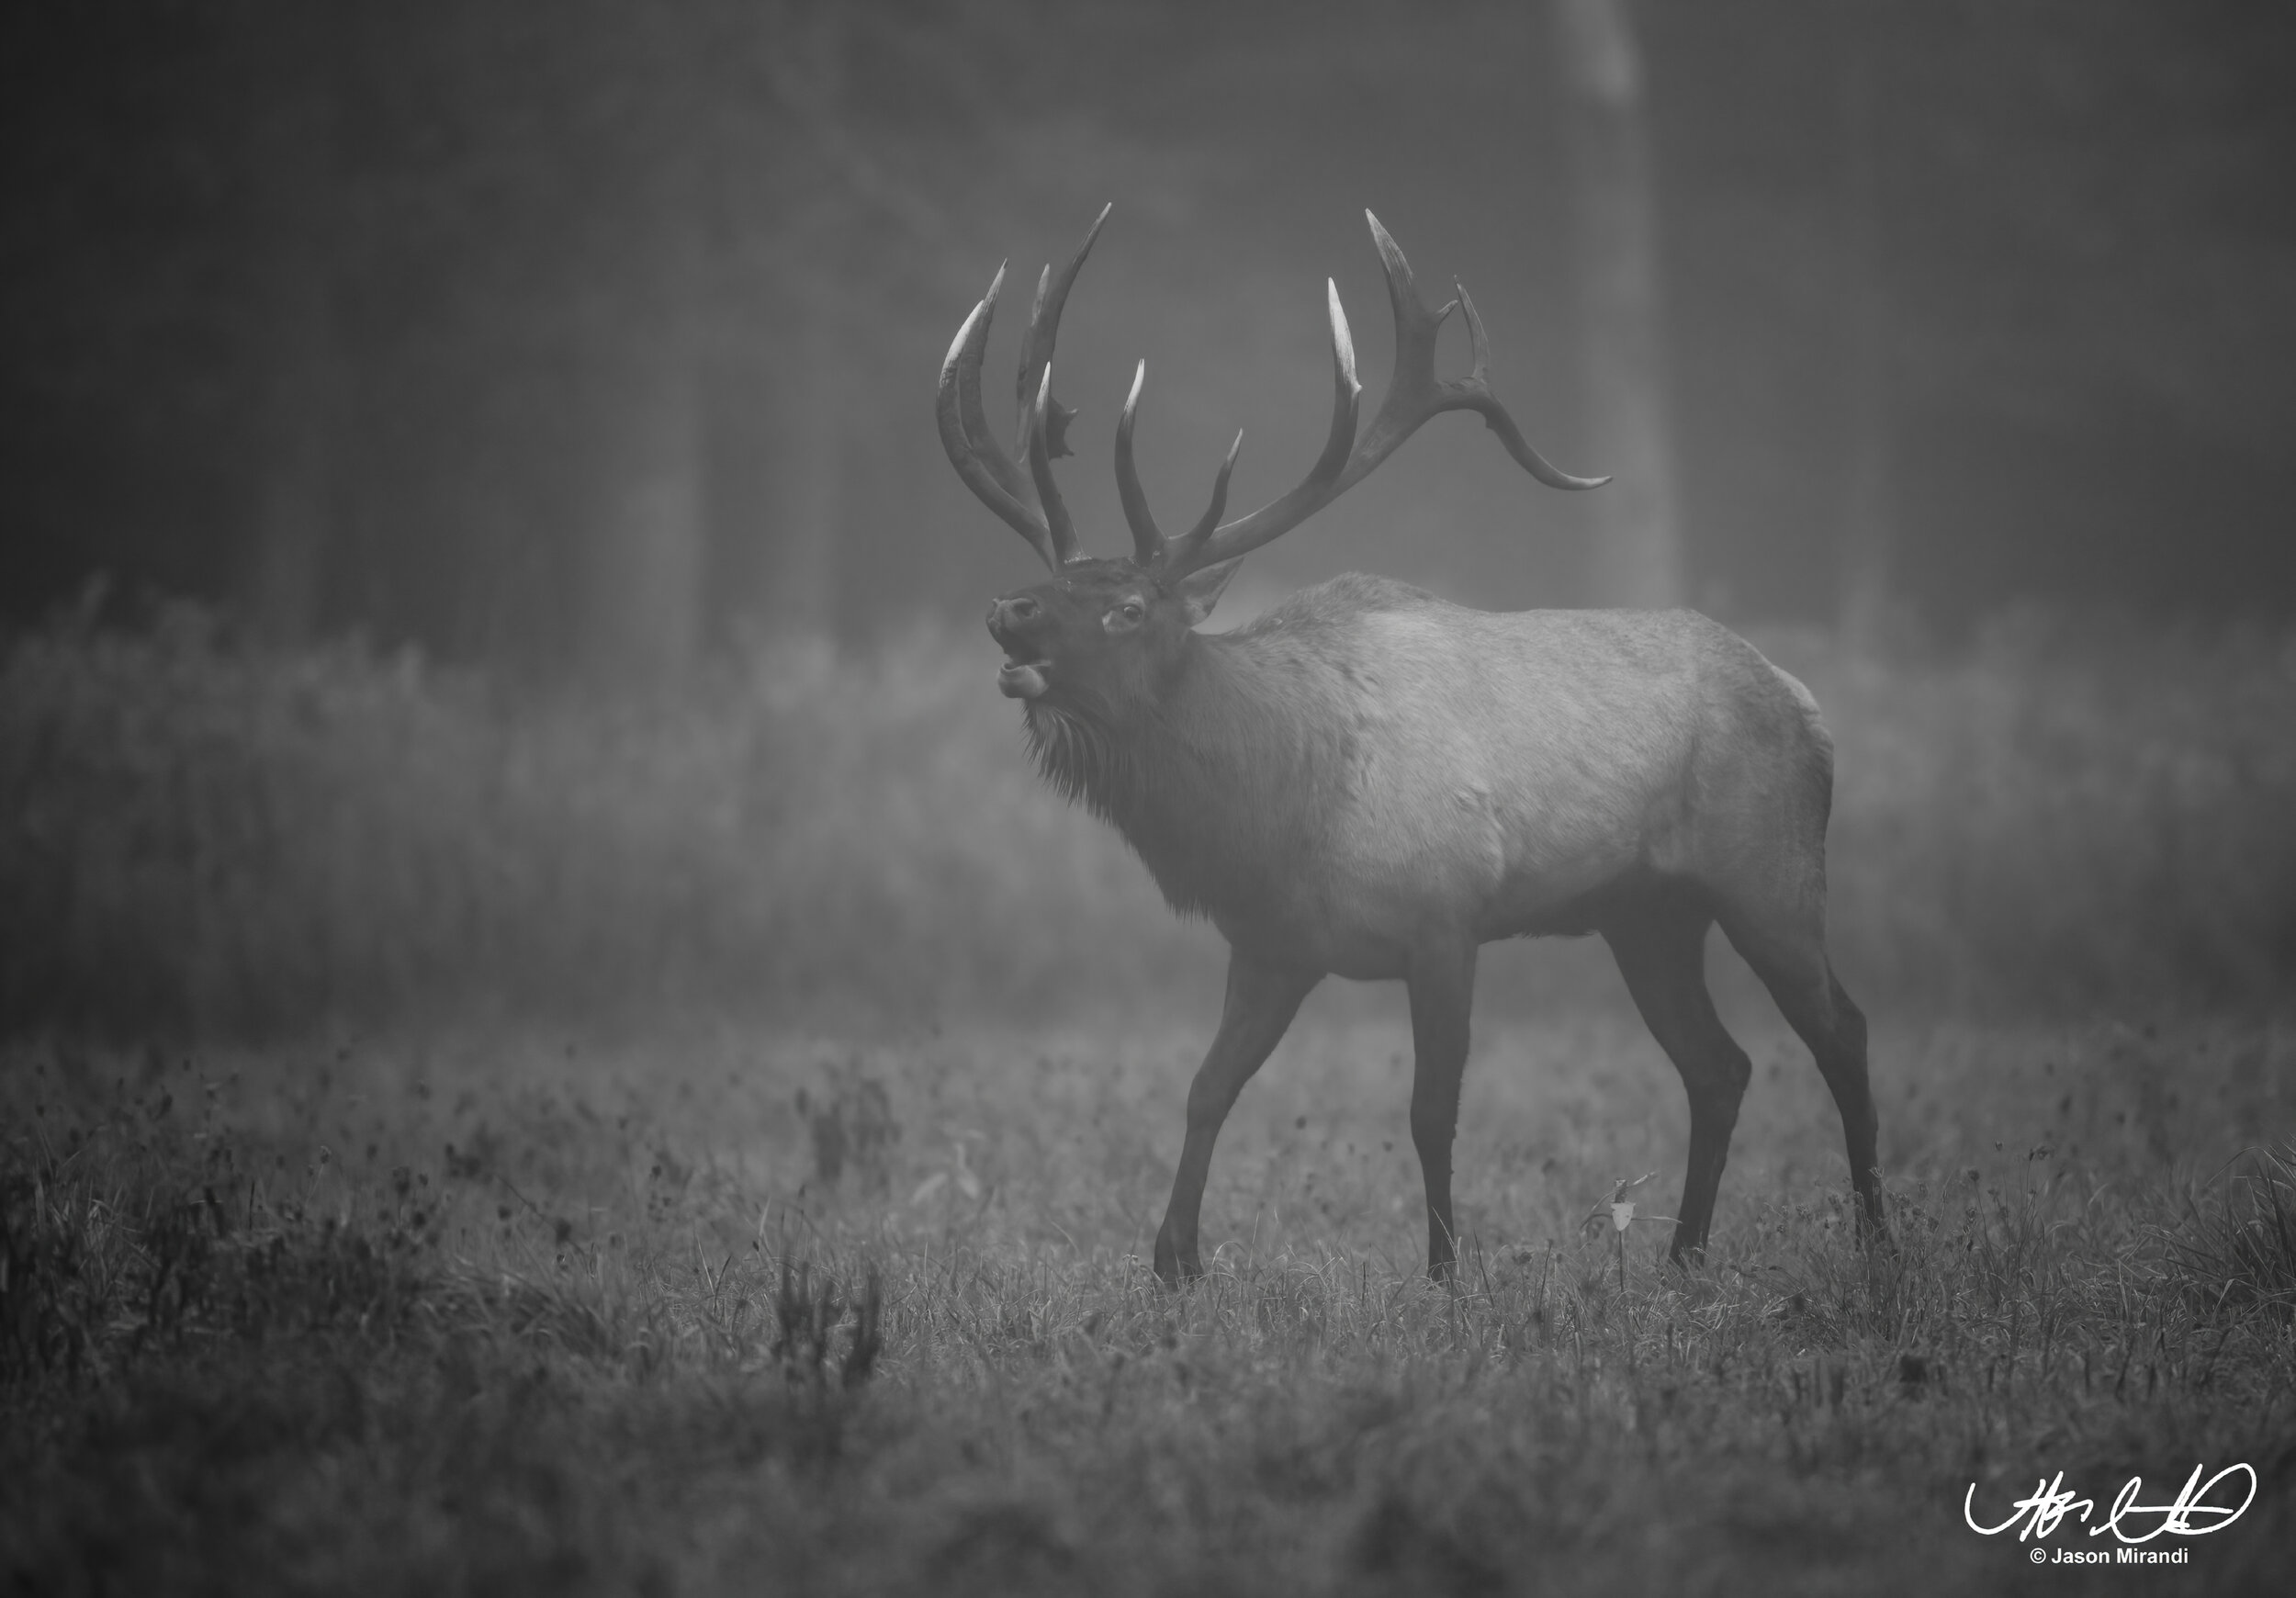 Gallery: Cervids - Deer, Moose, Elk — Hunting with a Lens